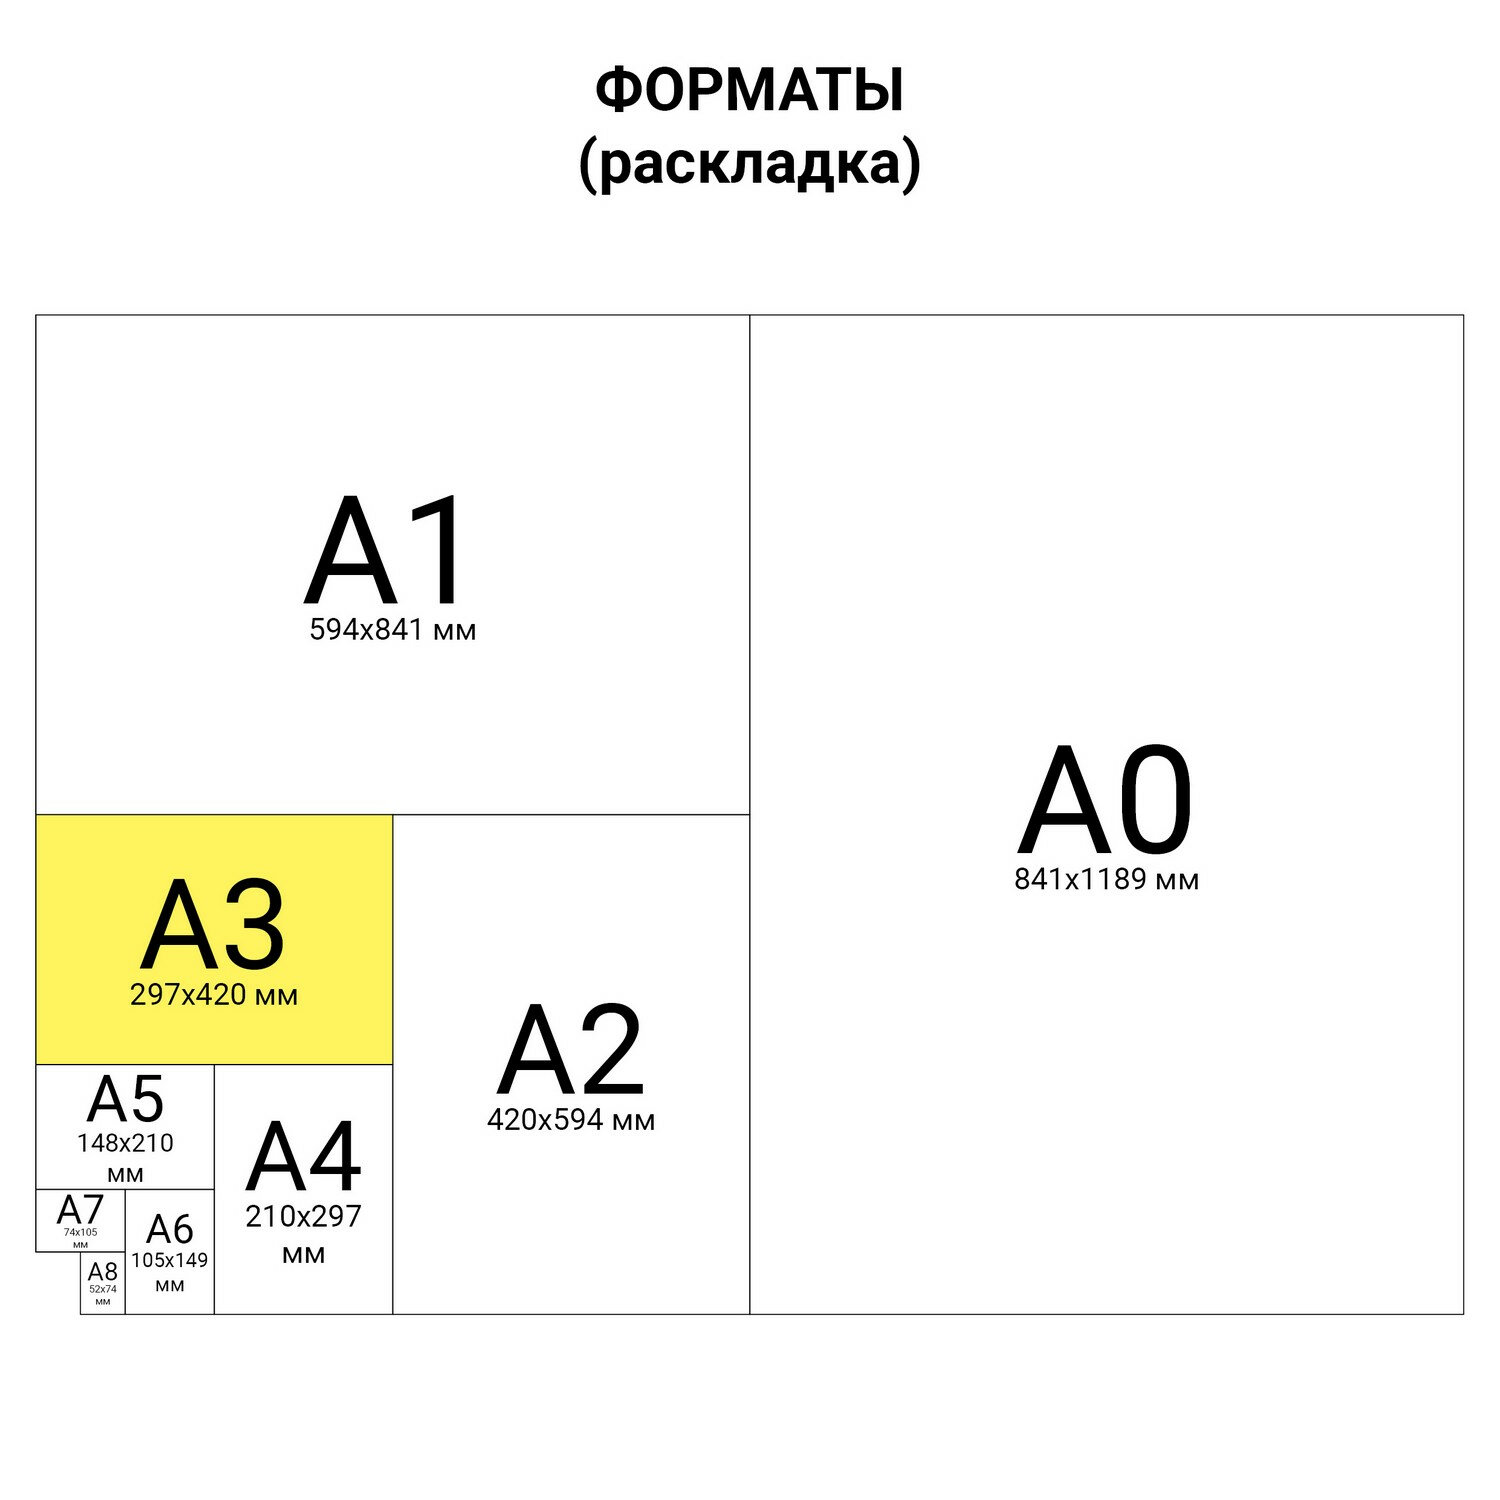 Бумага COLOR COPY, белая, А3, 120 г/м2, 250 л., для полноцветной печати, "А++", Австрия, 161% (CIE)